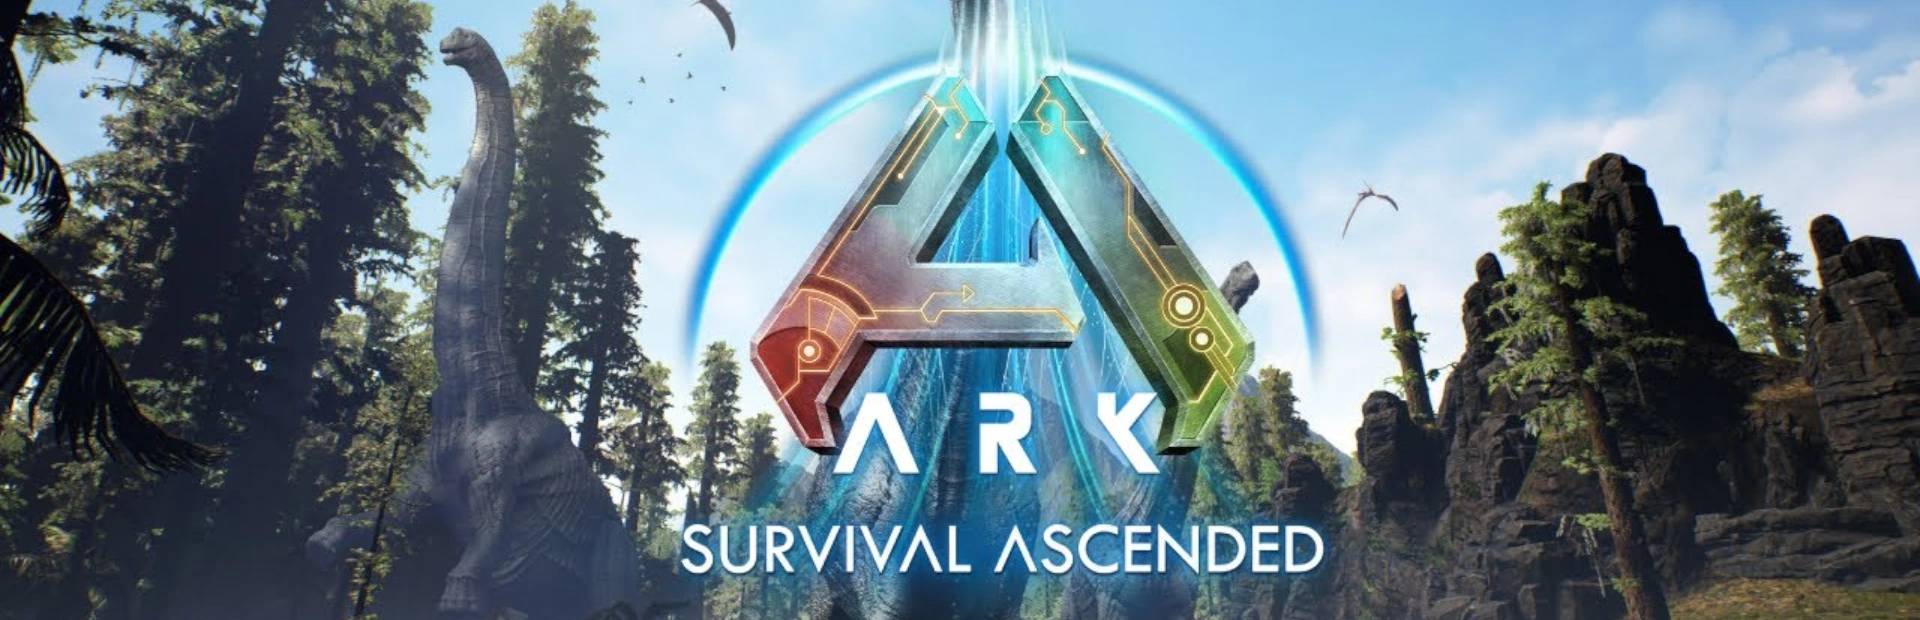 دانلود بازی ARK: Survival Ascended برای کامپیوتر | گیمباتو